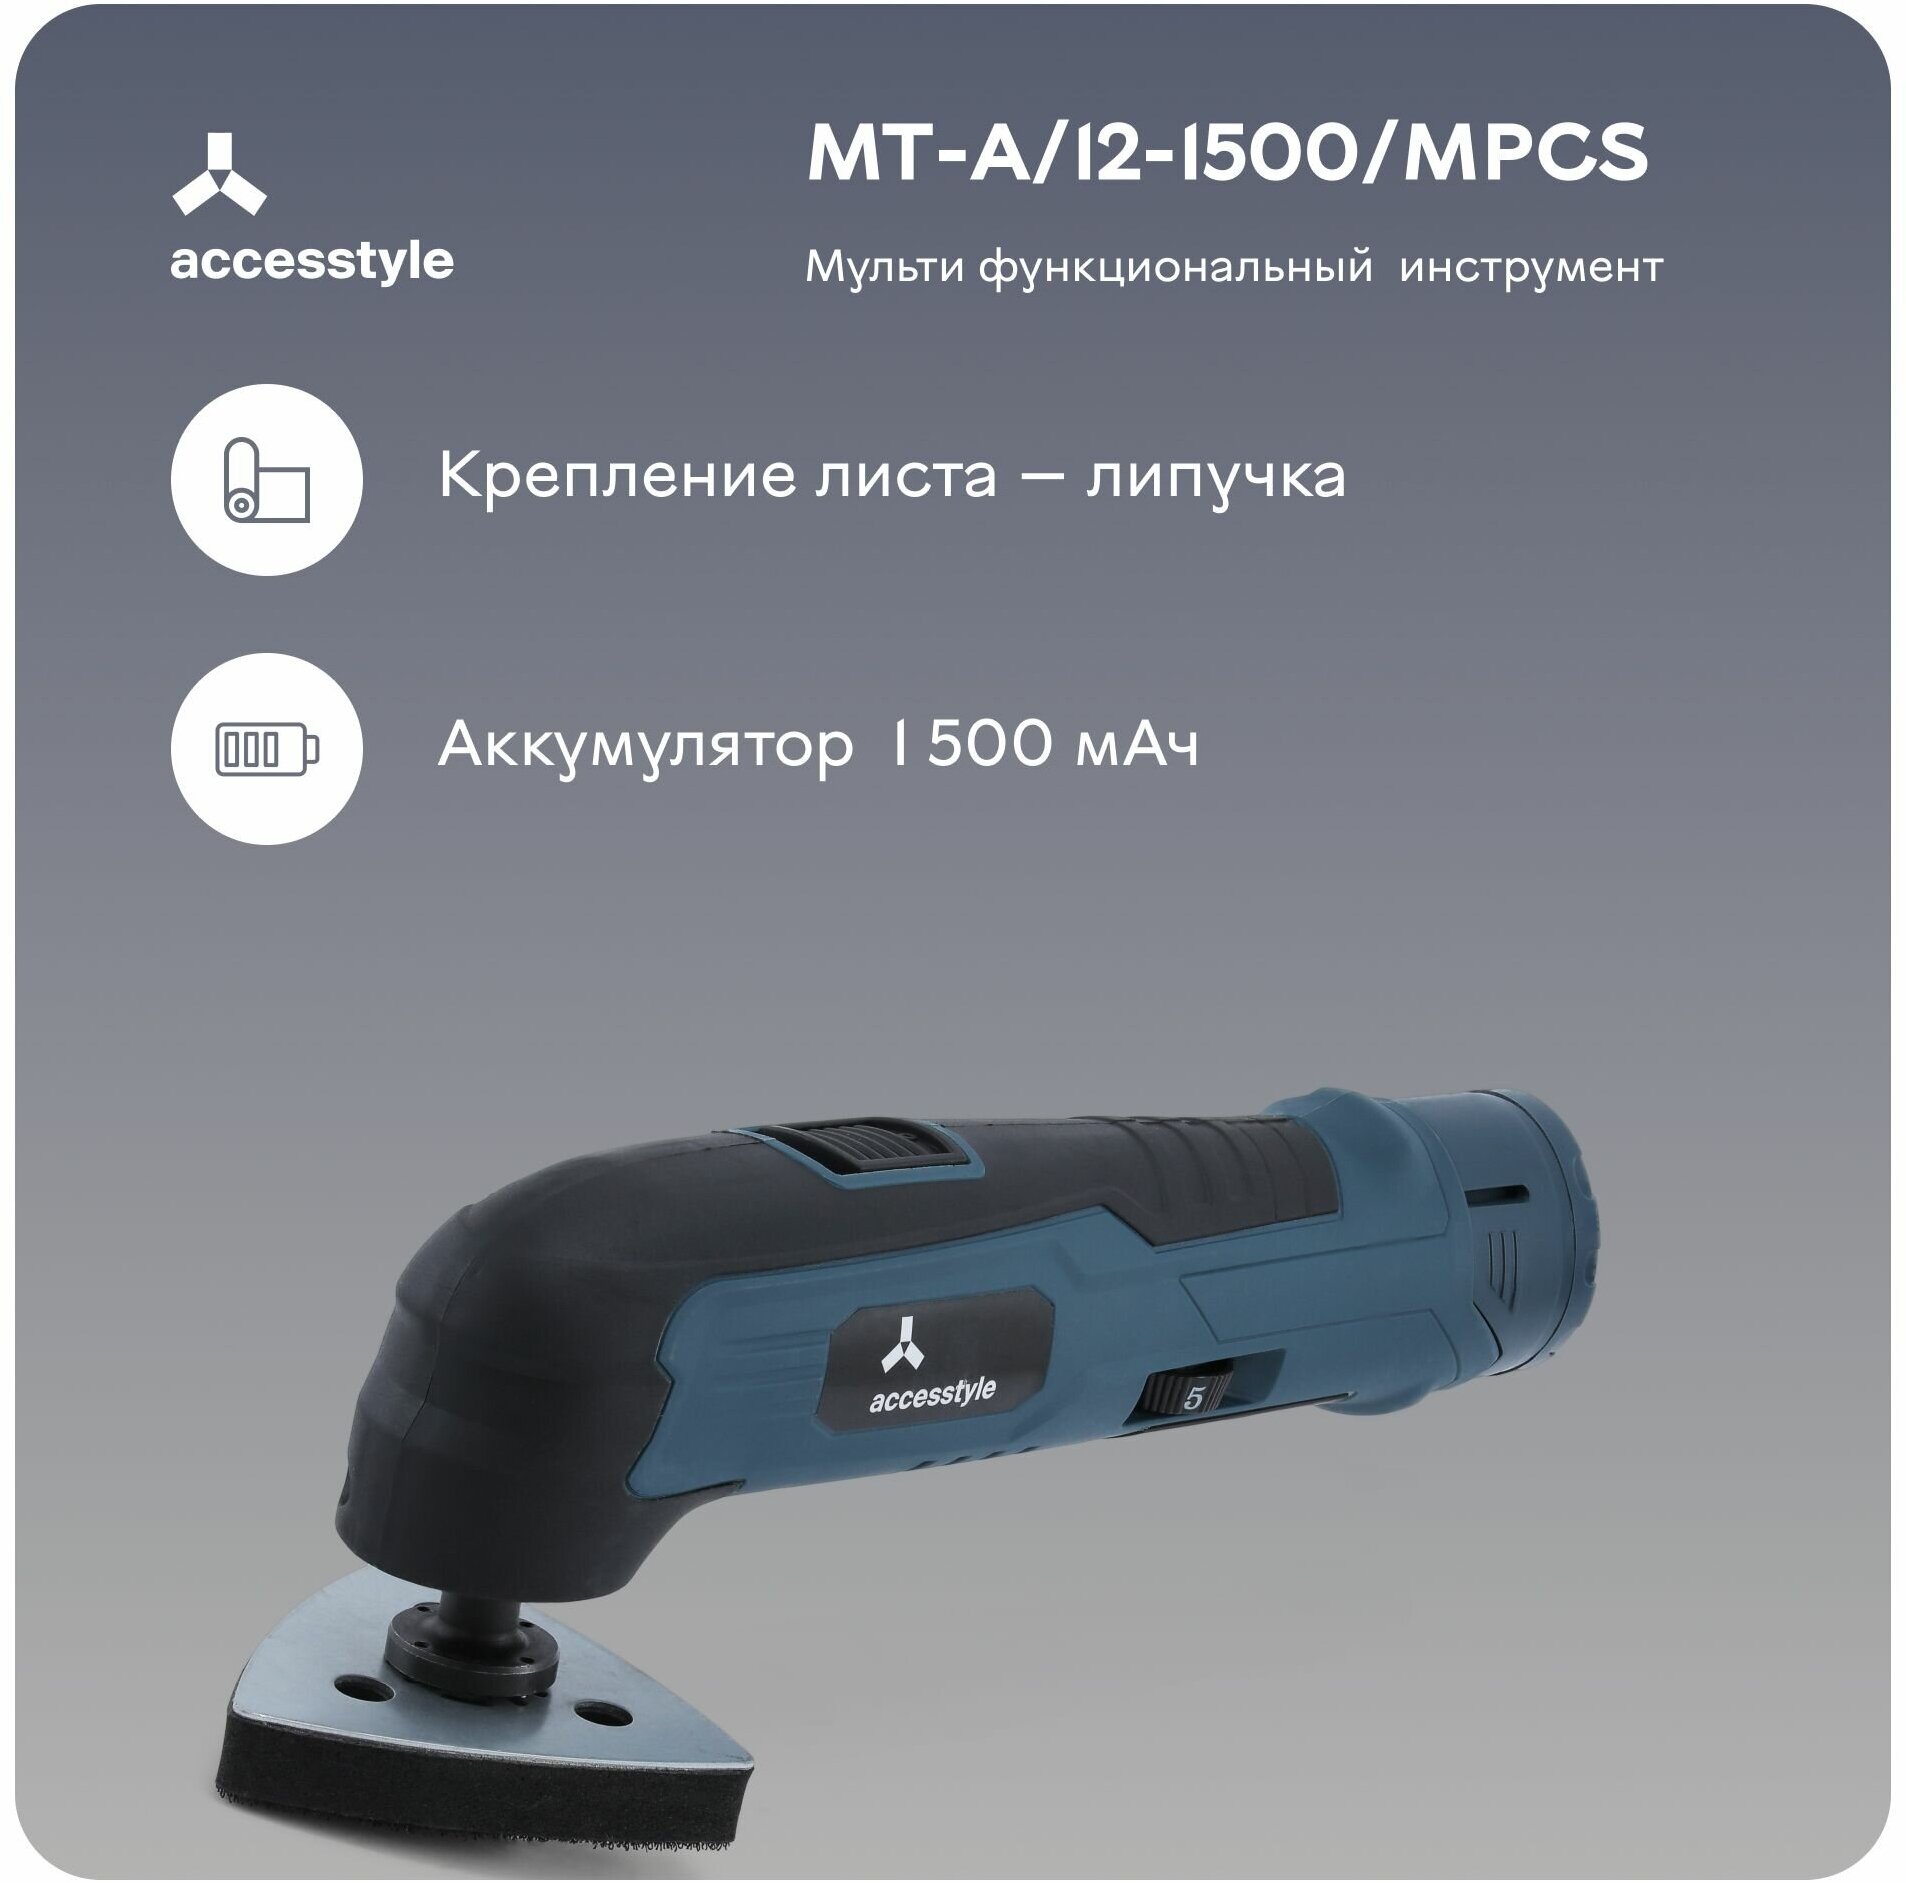 Многофункциональная шлифмашина AccesStyle MT-A/12-1500/MPCS 350 Вт С АКБ